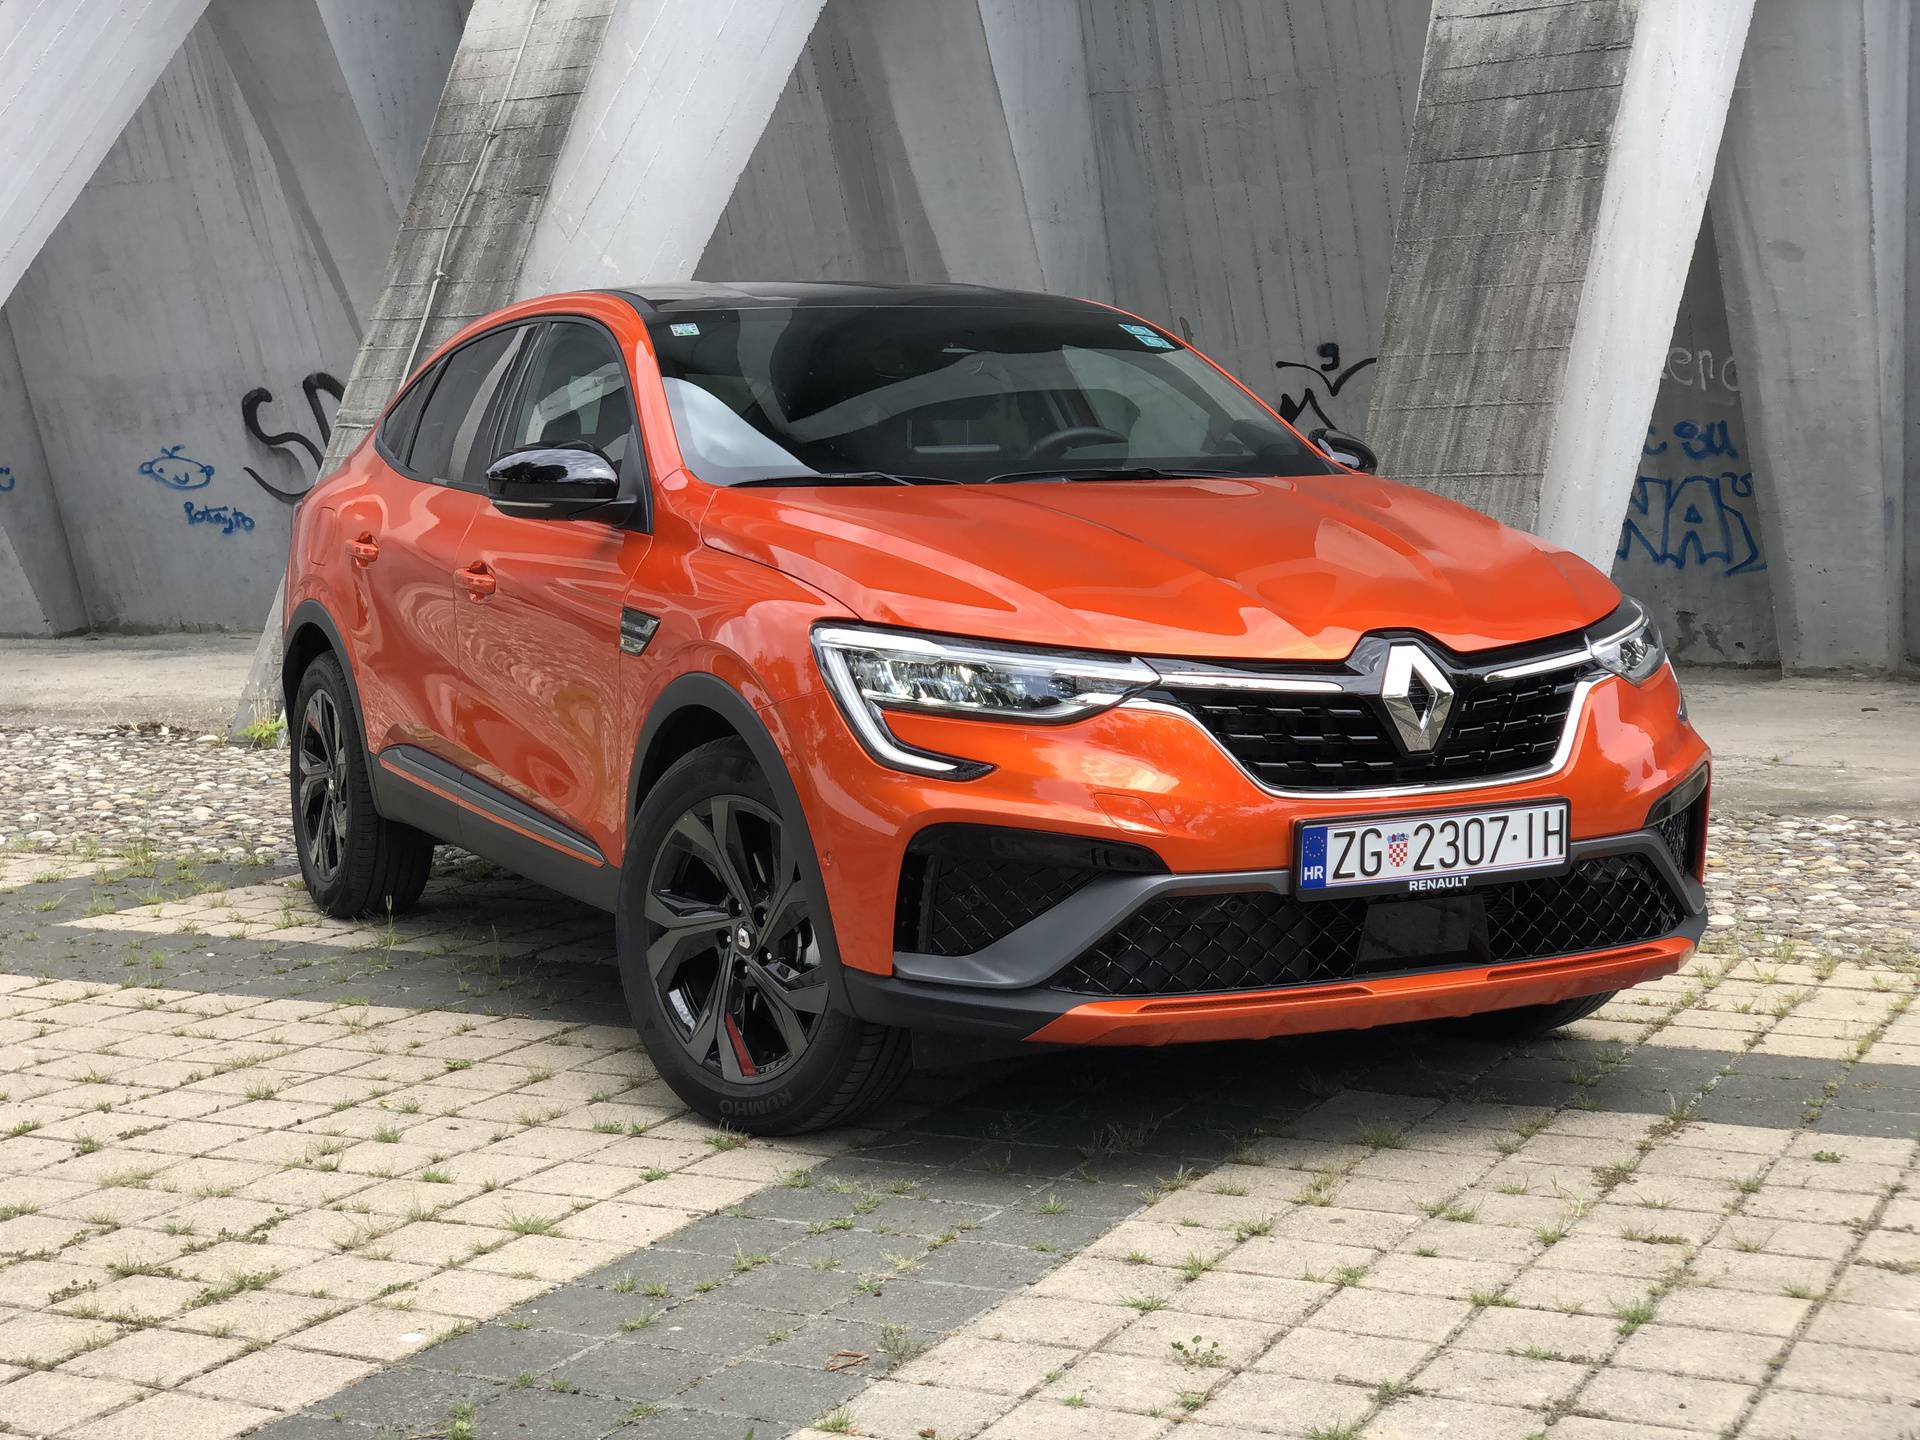 Testirali smo atraktivni Renault Megane Conquest: Nova SUV zvijezda na hrvatskom tržištu